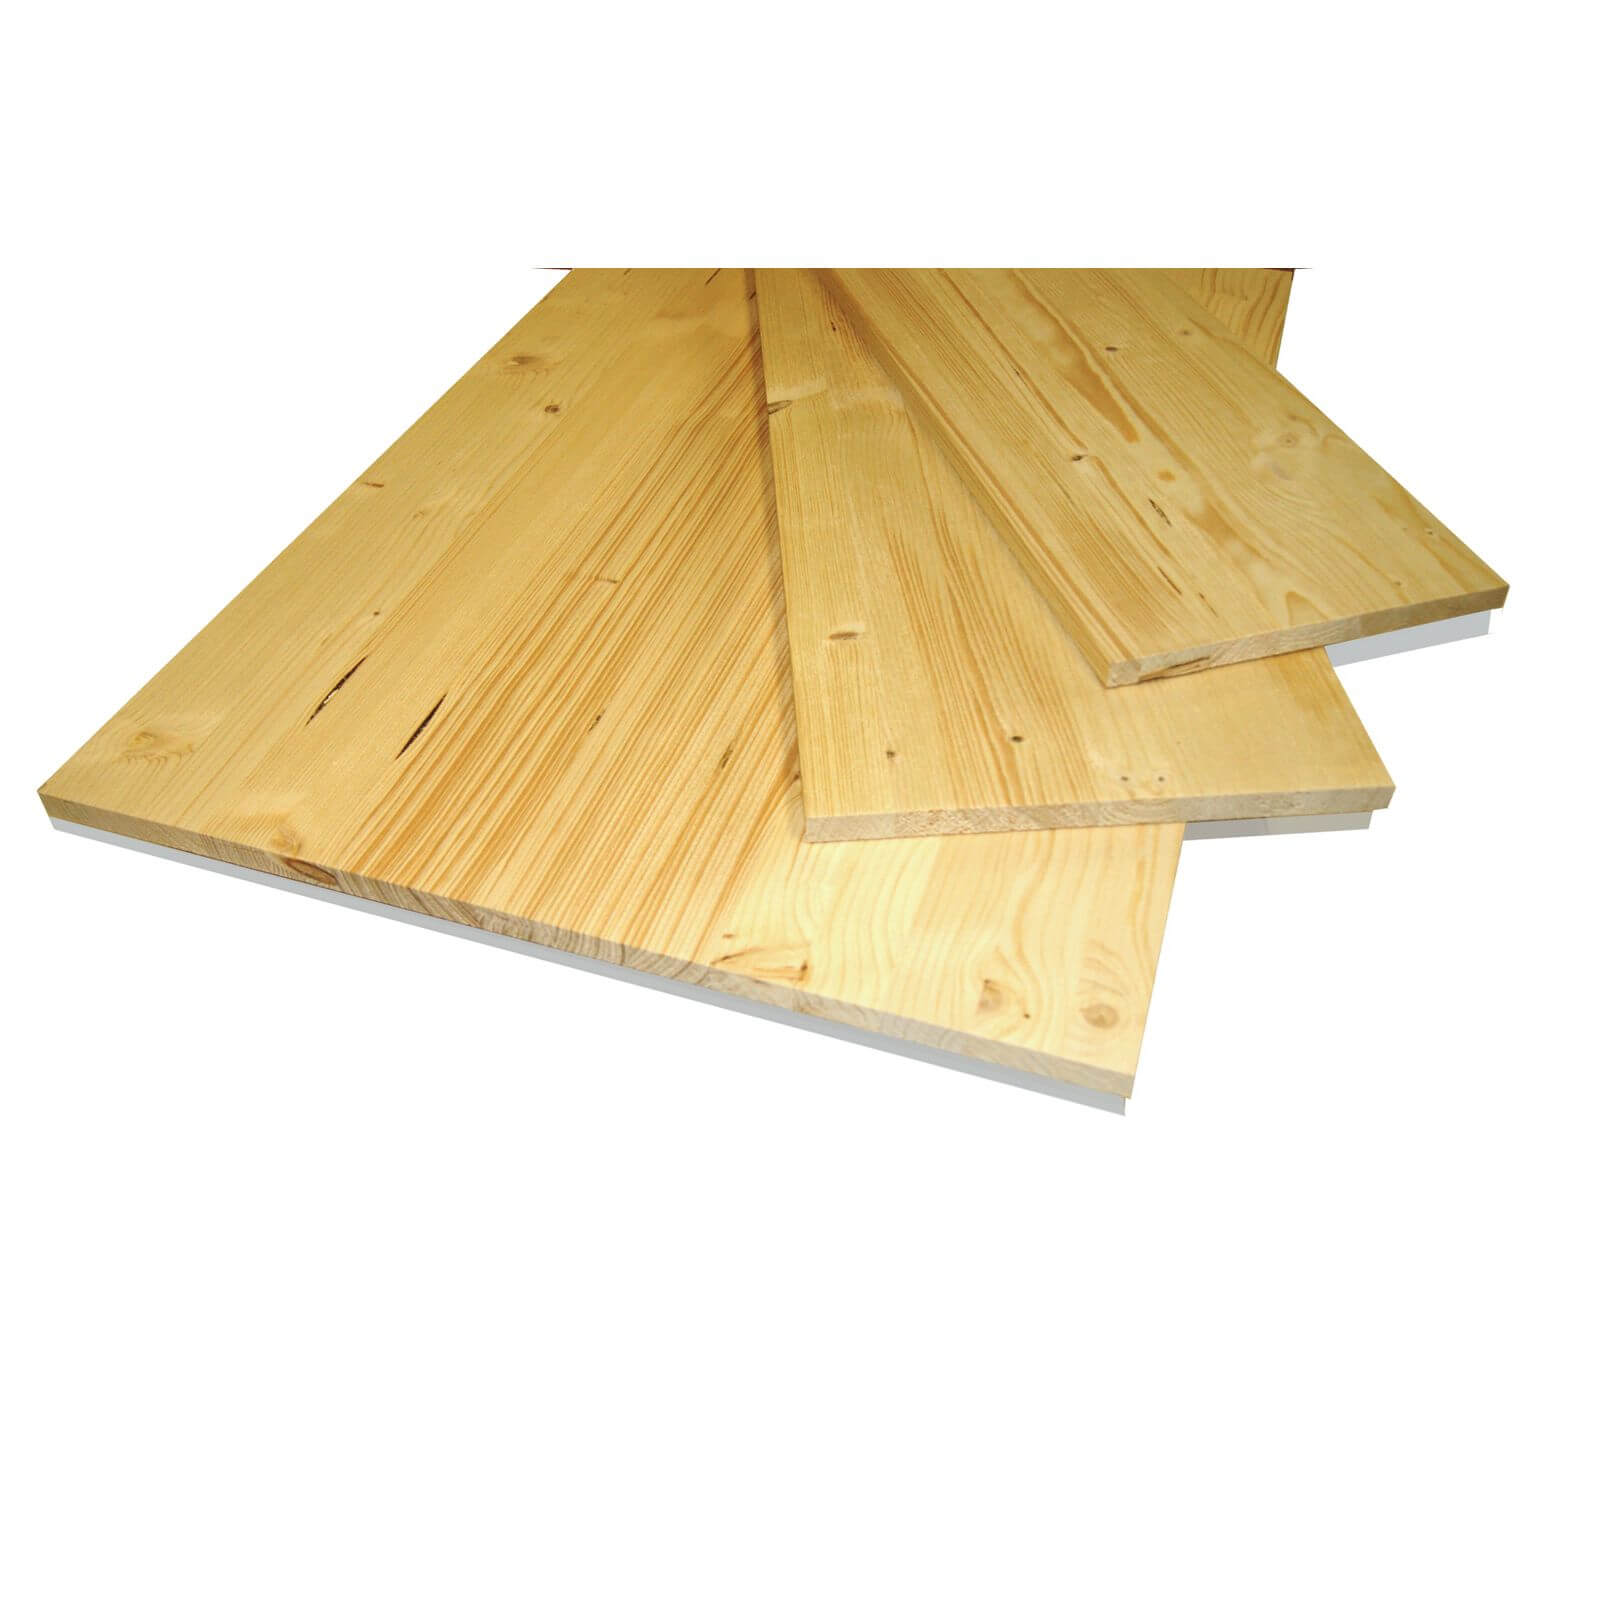 Metsa Wood Solid Spruce Wooden Panel Board 0.85m (18 x 500 x 850mm)